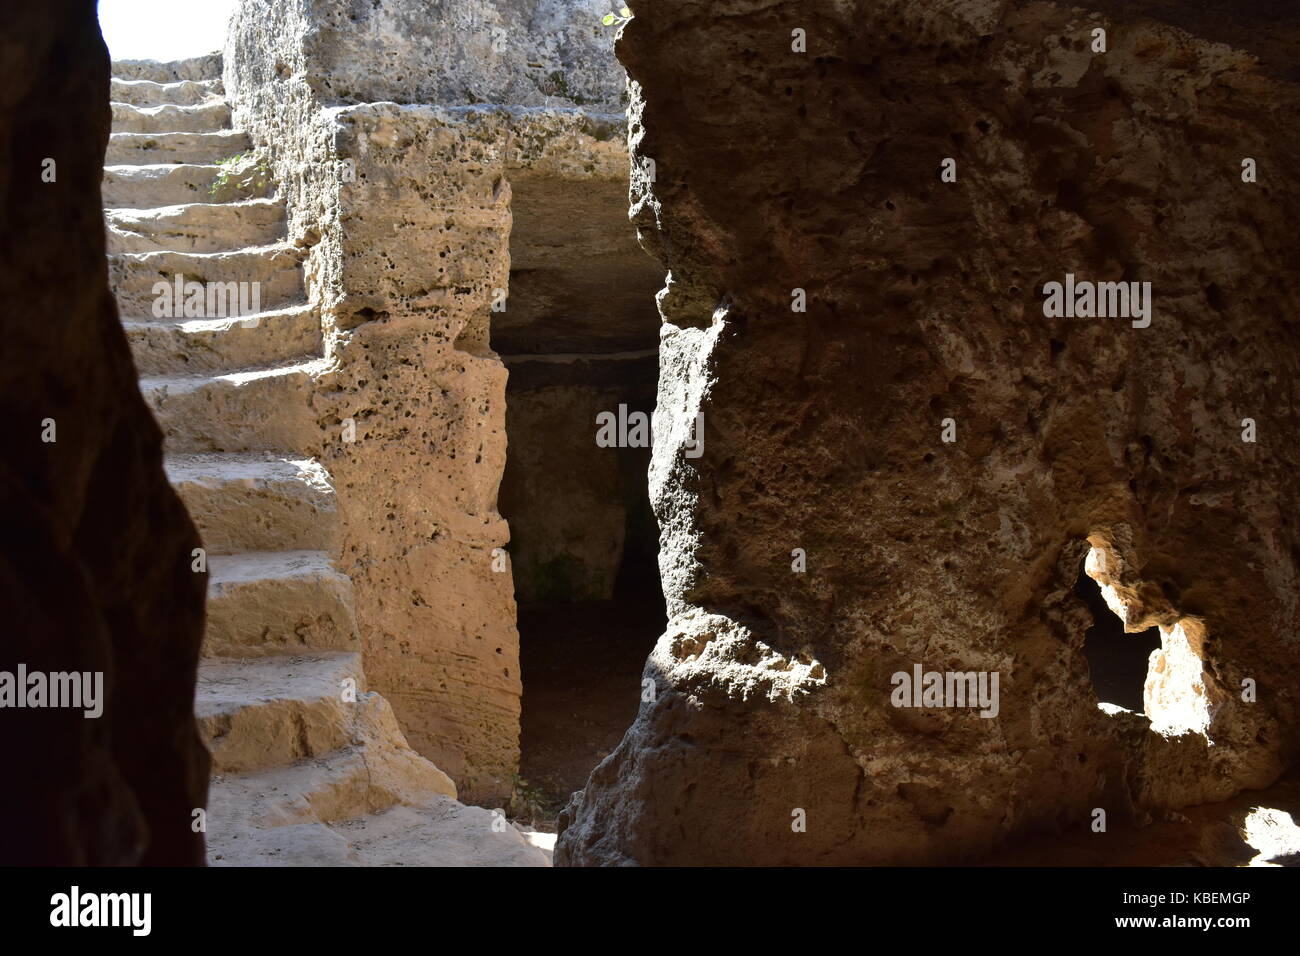 Eine der vielen Höhlen am Fabrica hill Fels gehauene Kammern, bekannt als Agios lambrianos, in Paphos, Zypern. Stockfoto